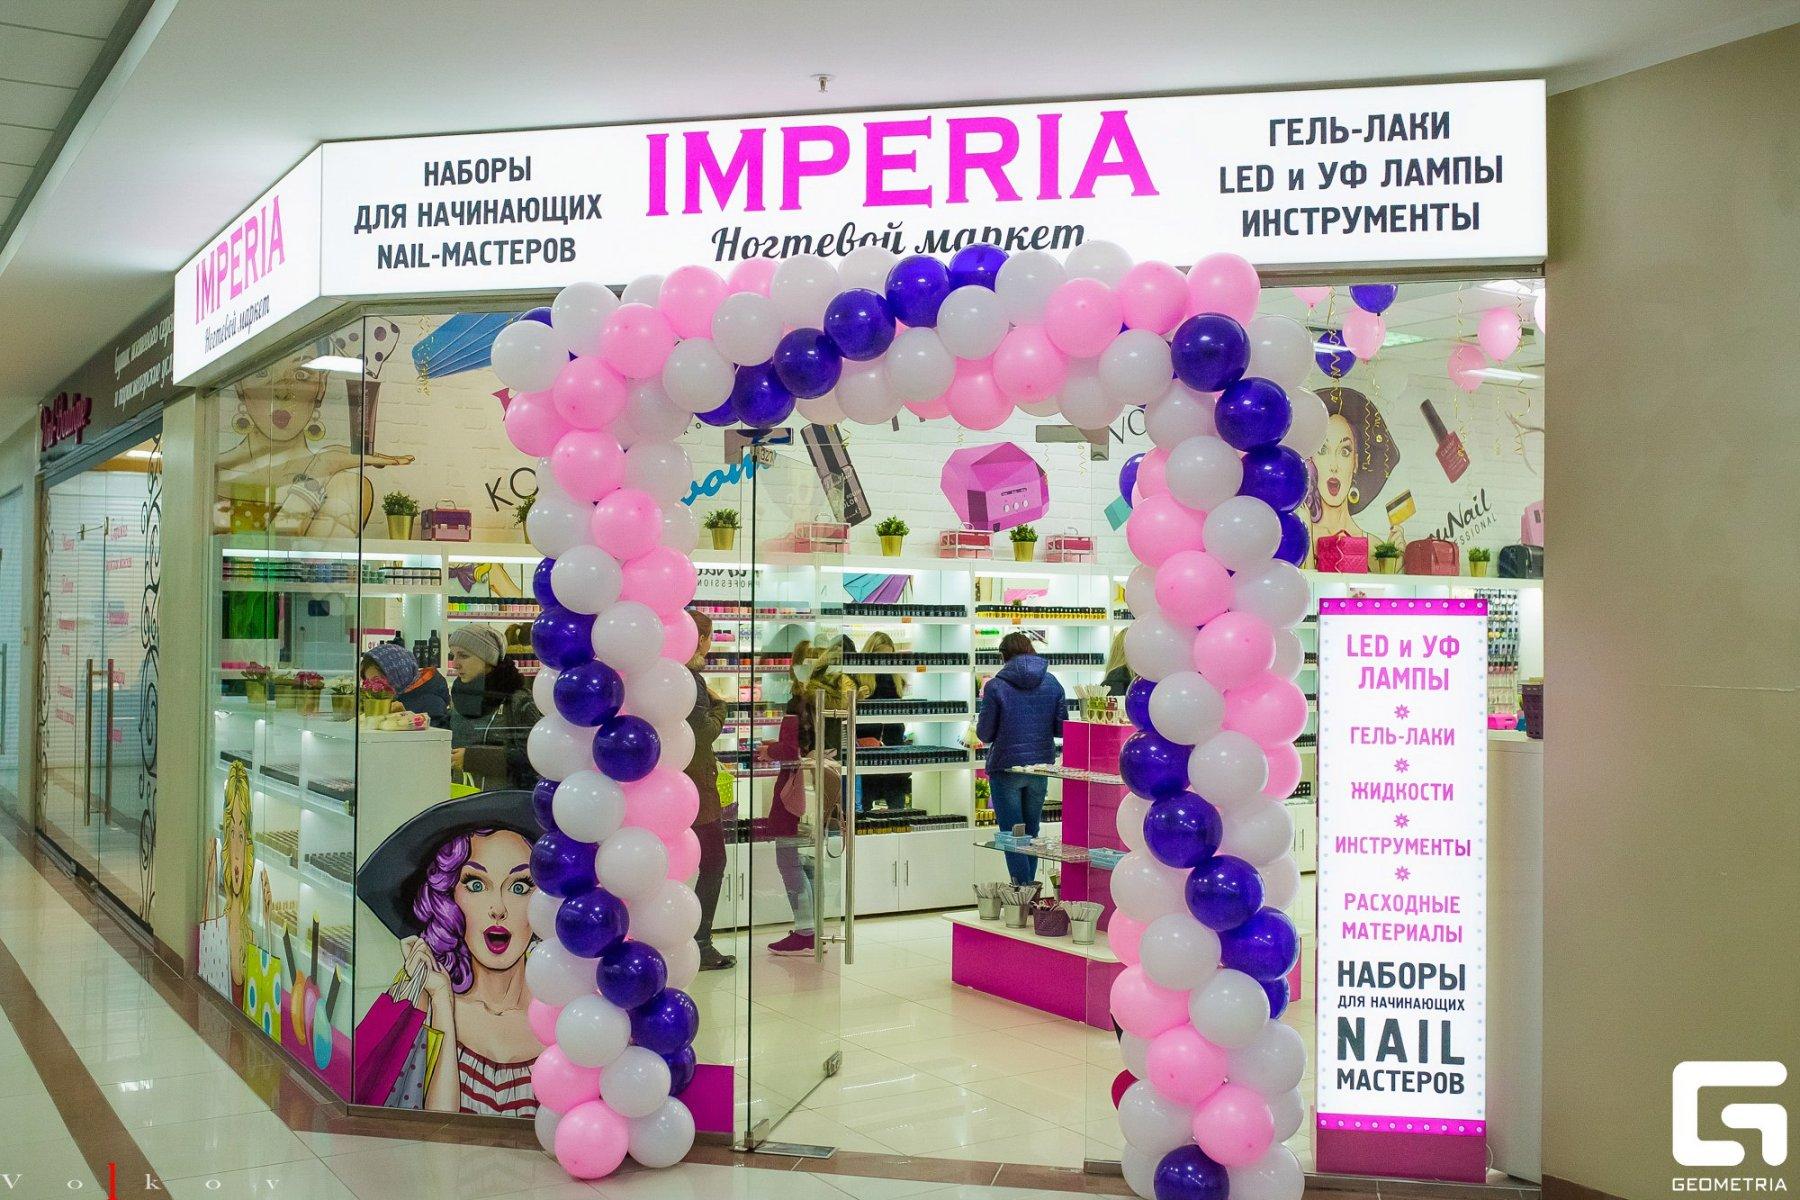 Империя ногтевой. Названия для магазина ногтей. Imperia ногтевой гипермаркет. Империя Омск ногтевой супермаркет. Название ногтевого магазина.